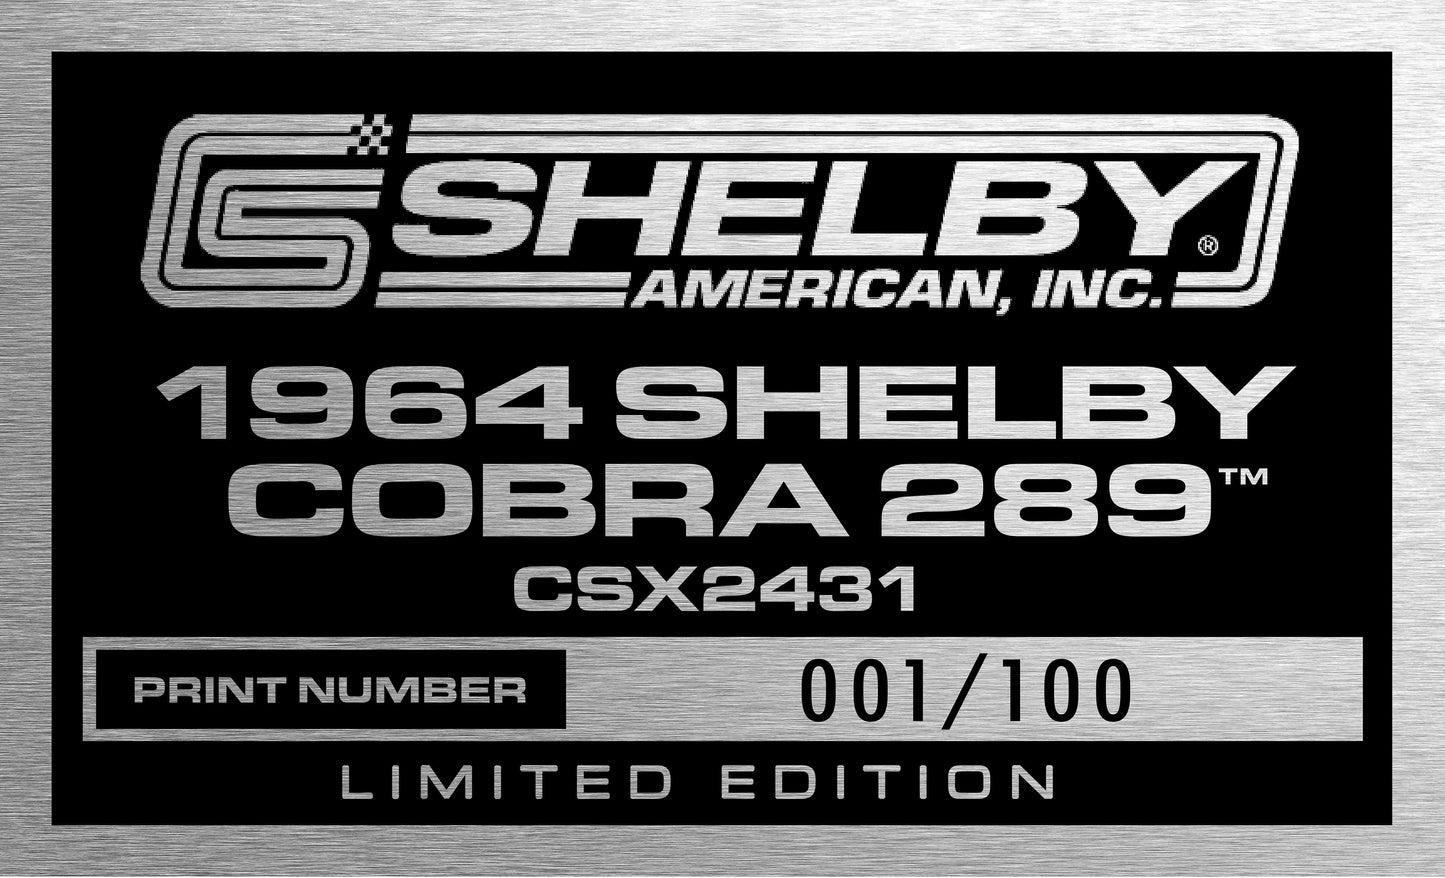 1964 Shelby Cobra 289-CSX2431 Collector's Edition (CSX2431)